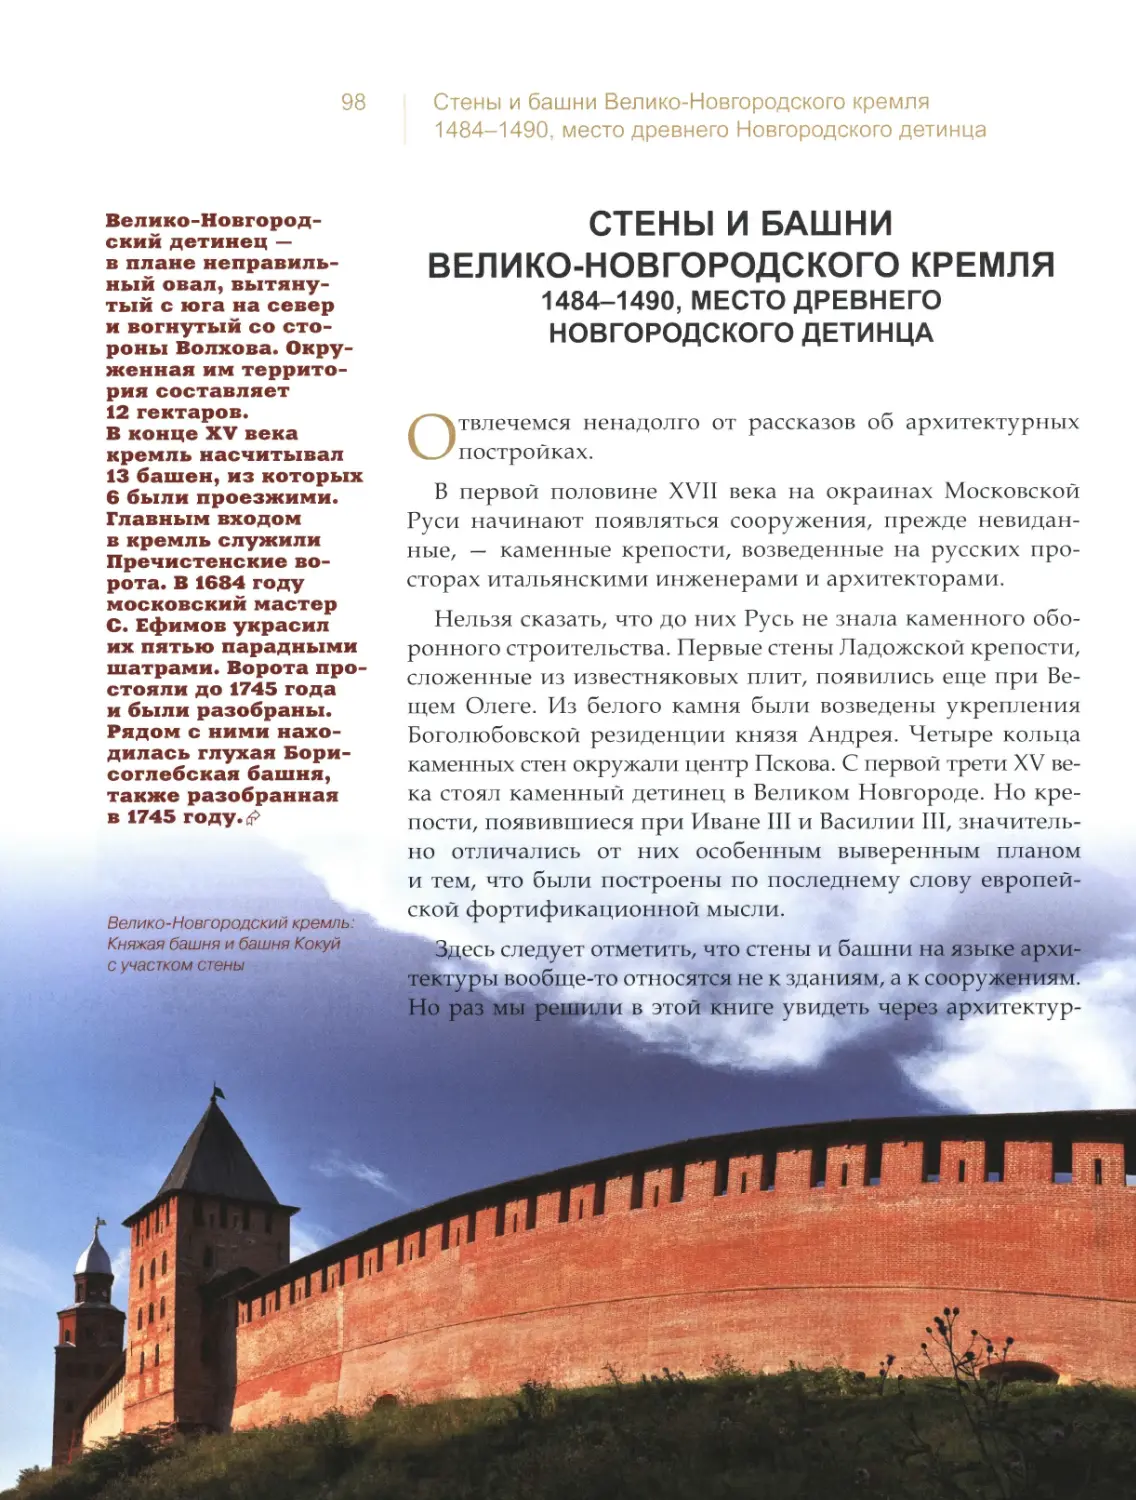 Стены и башни Велико-Новгородского кремля, место древнего Новгородского детинца